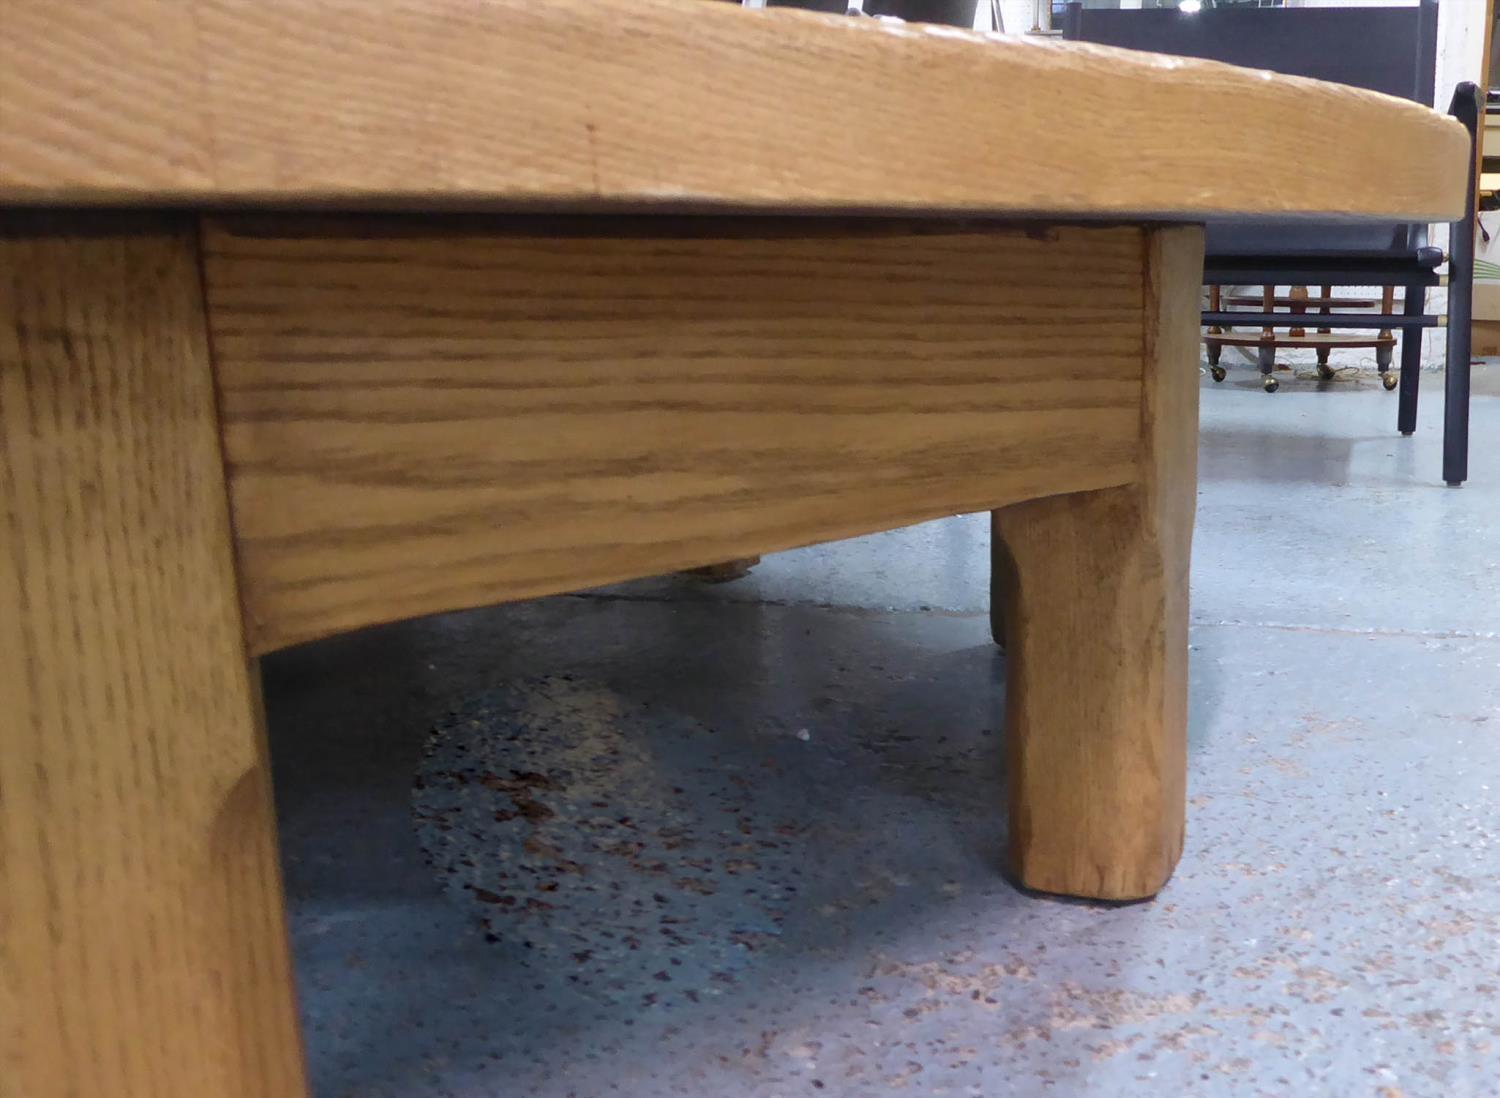 RALPH LAUREN PLATFORM COCKTAIL TABLE, 152cm x 152cm x 38cm. (slight Faults) - Image 2 of 7